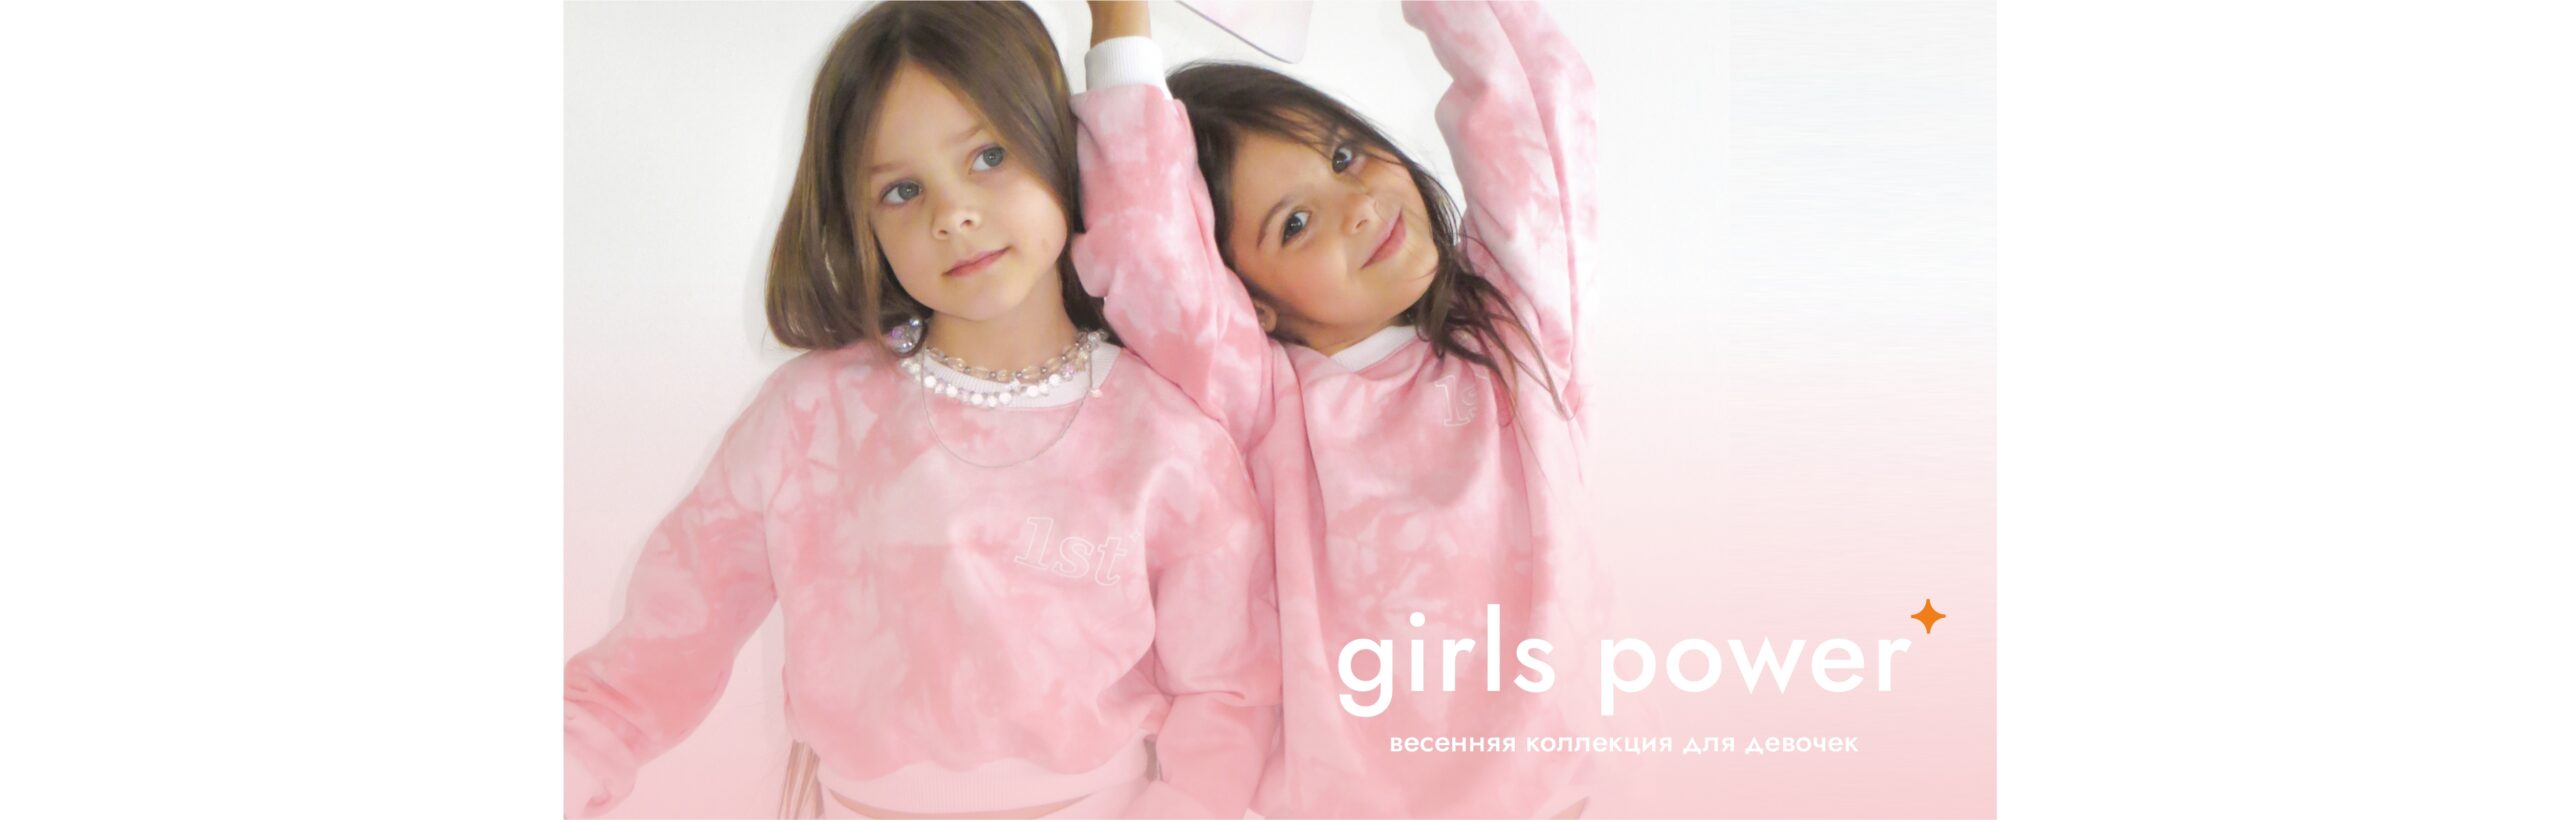 Girls power! Розовый Тай-дай